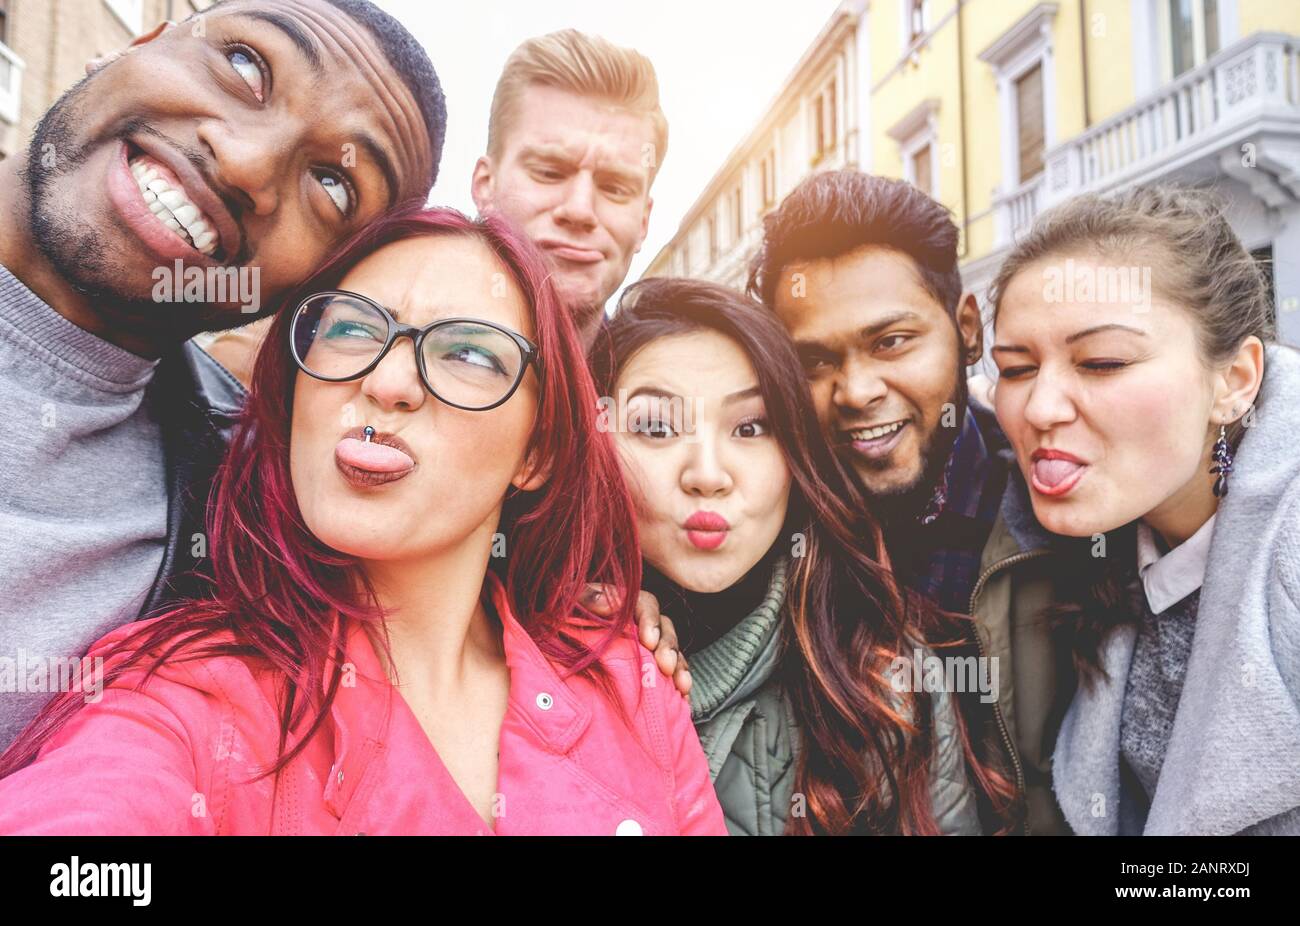 Des amis heureux de cultures et de races diverses prenant selfie faire des visages drôles - Jeunesse, génération millénaire et concept d'amitié avec les jeunes Banque D'Images